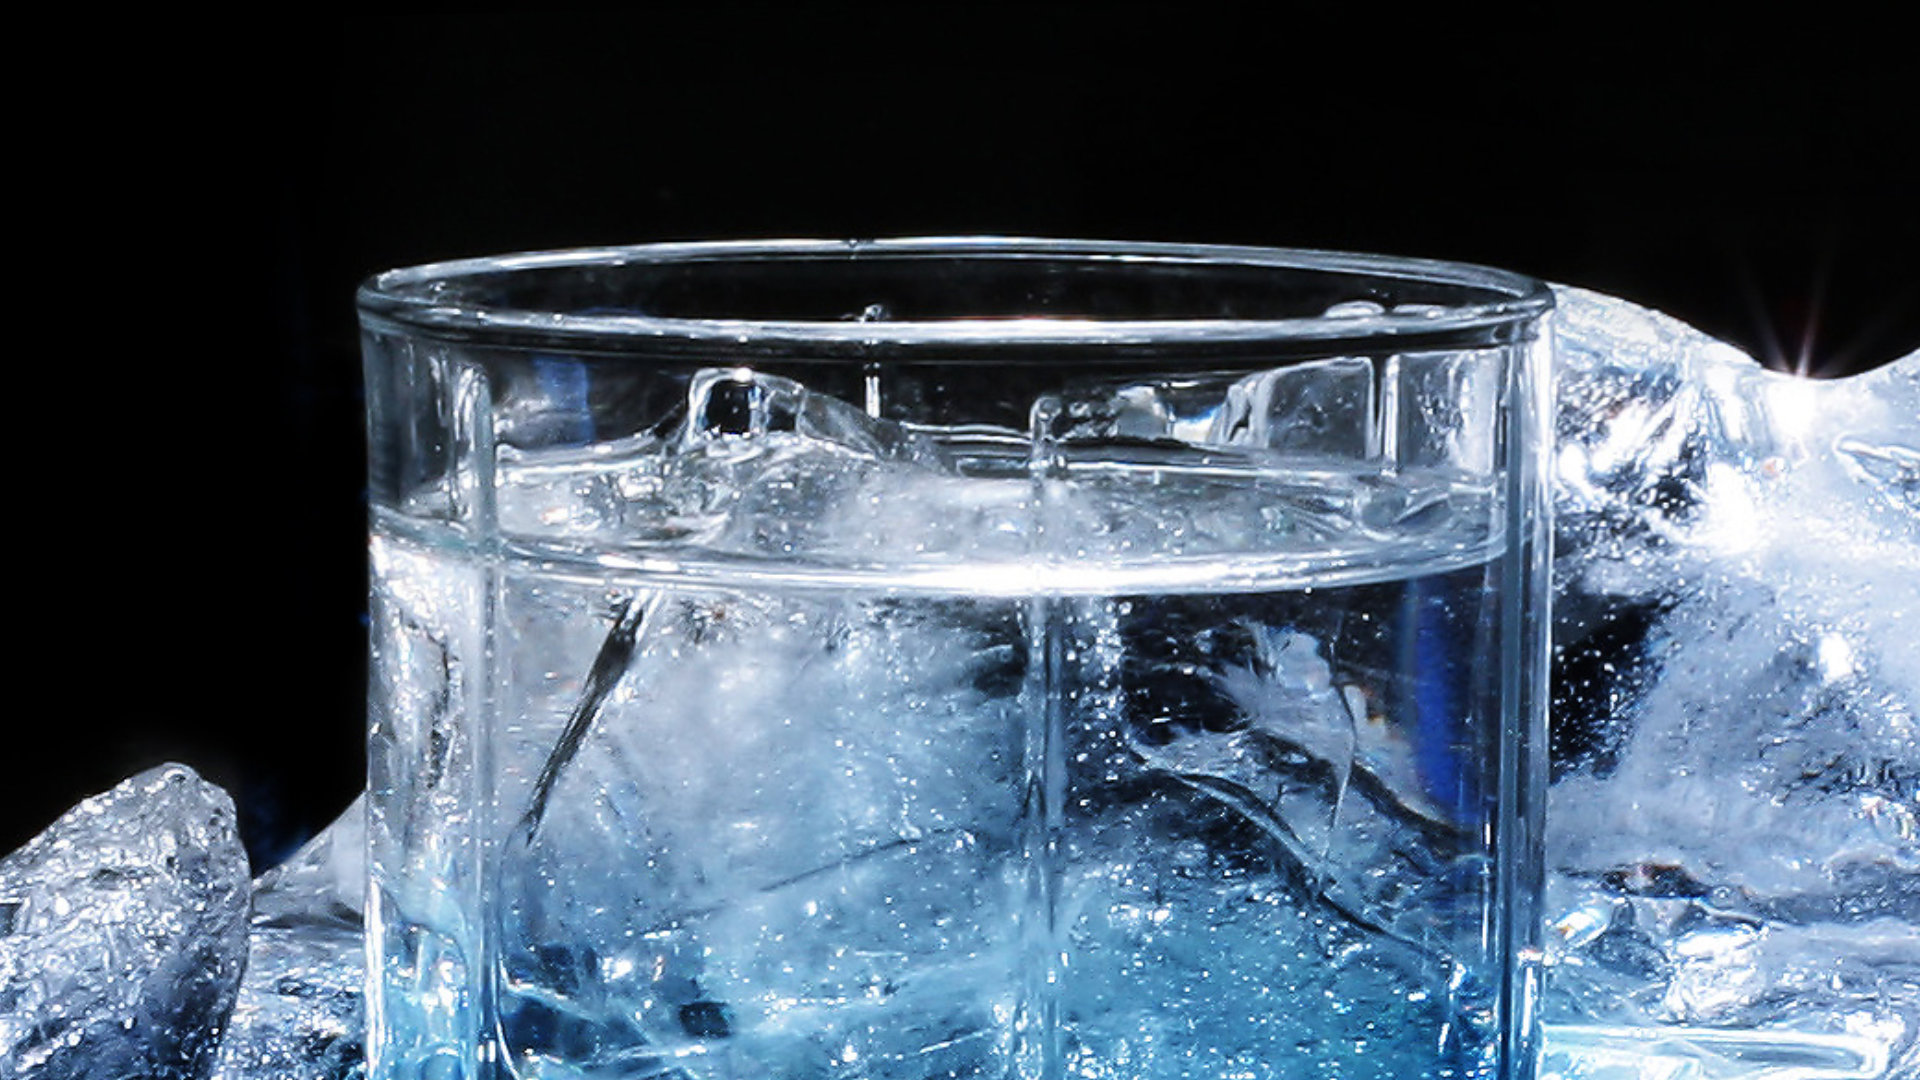 Ice water - freezer needing reset